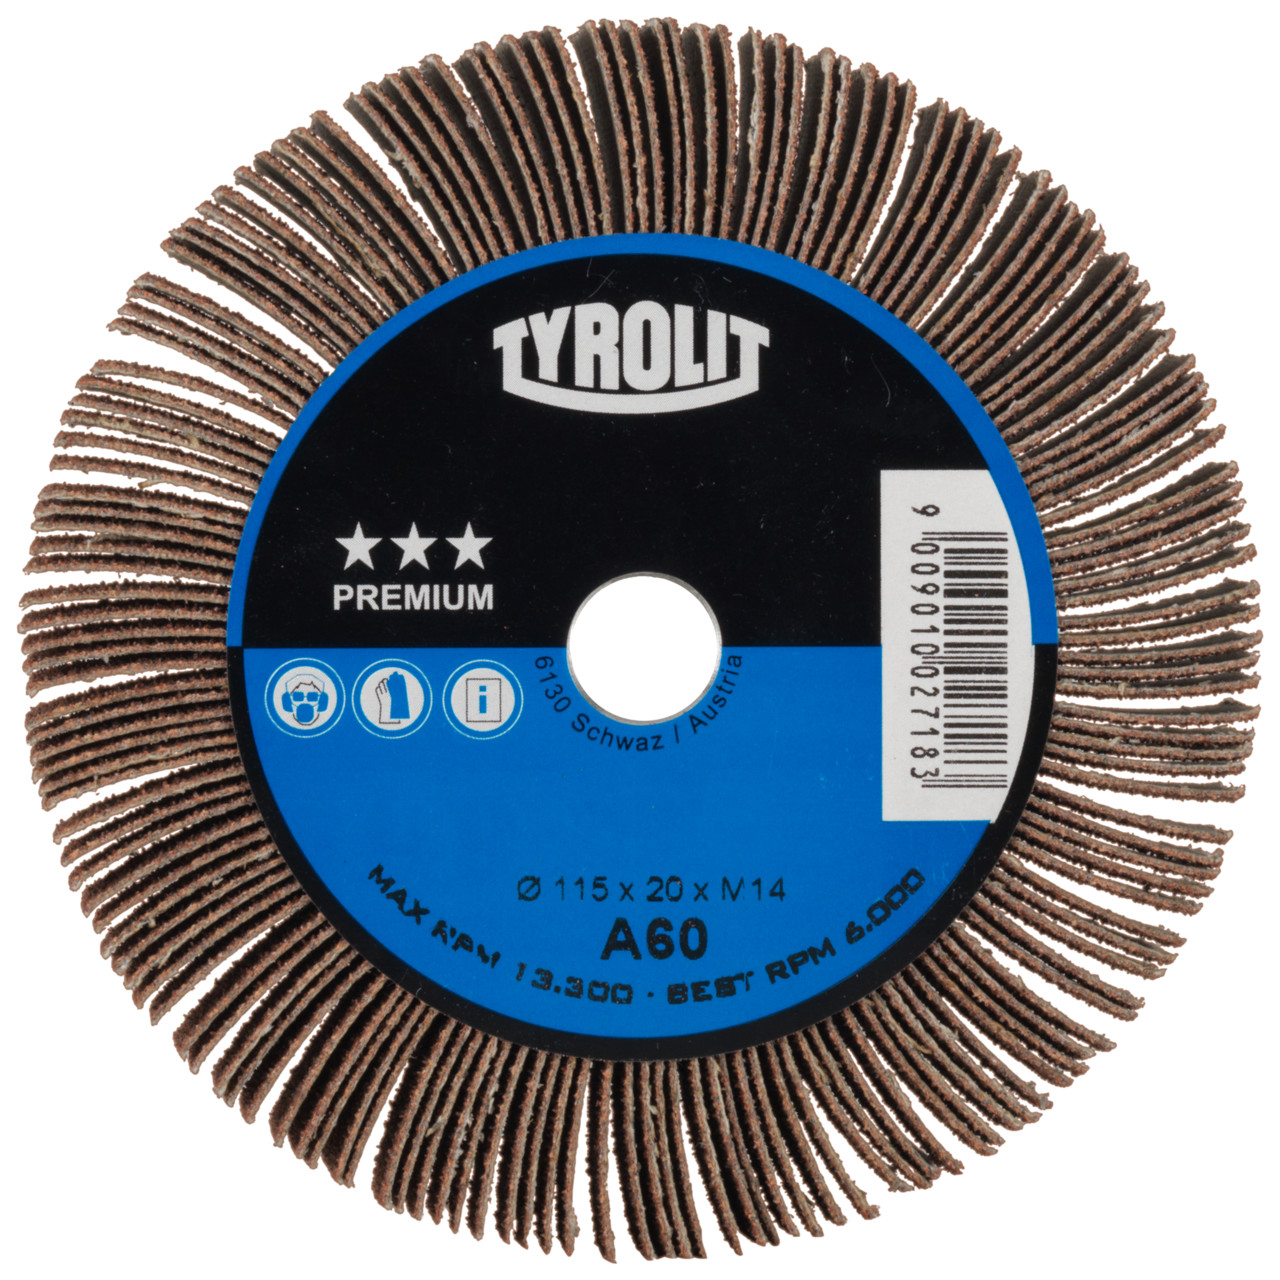 Tyrolit A-P01 C X Ruote a ventaglio DxD 115x20 Per acciaio, metalli non ferrosi e legno, P60, forma: 1LA - (ruota a ventaglio), Art. 34057513